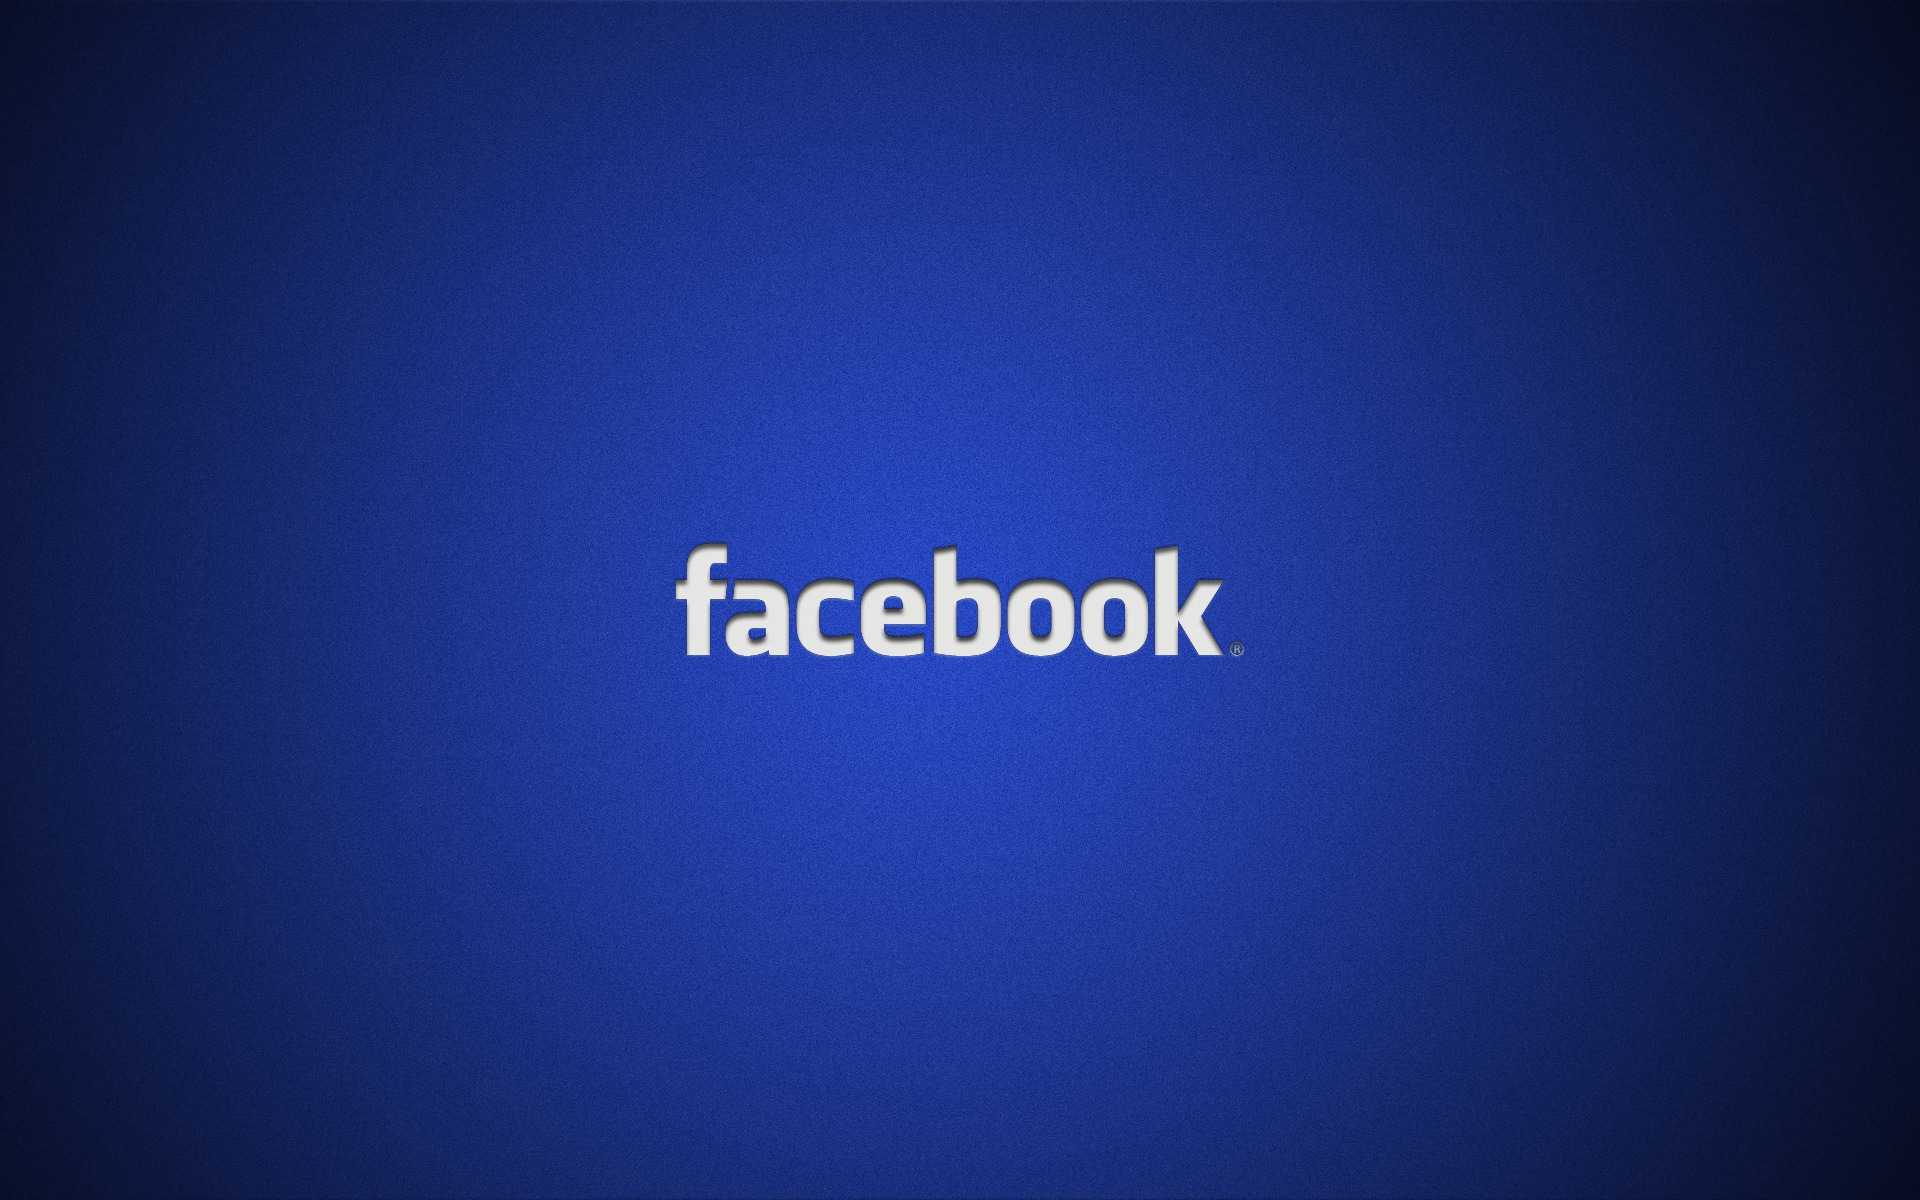 Facebook Logo for 1920 x 1200 widescreen resolution